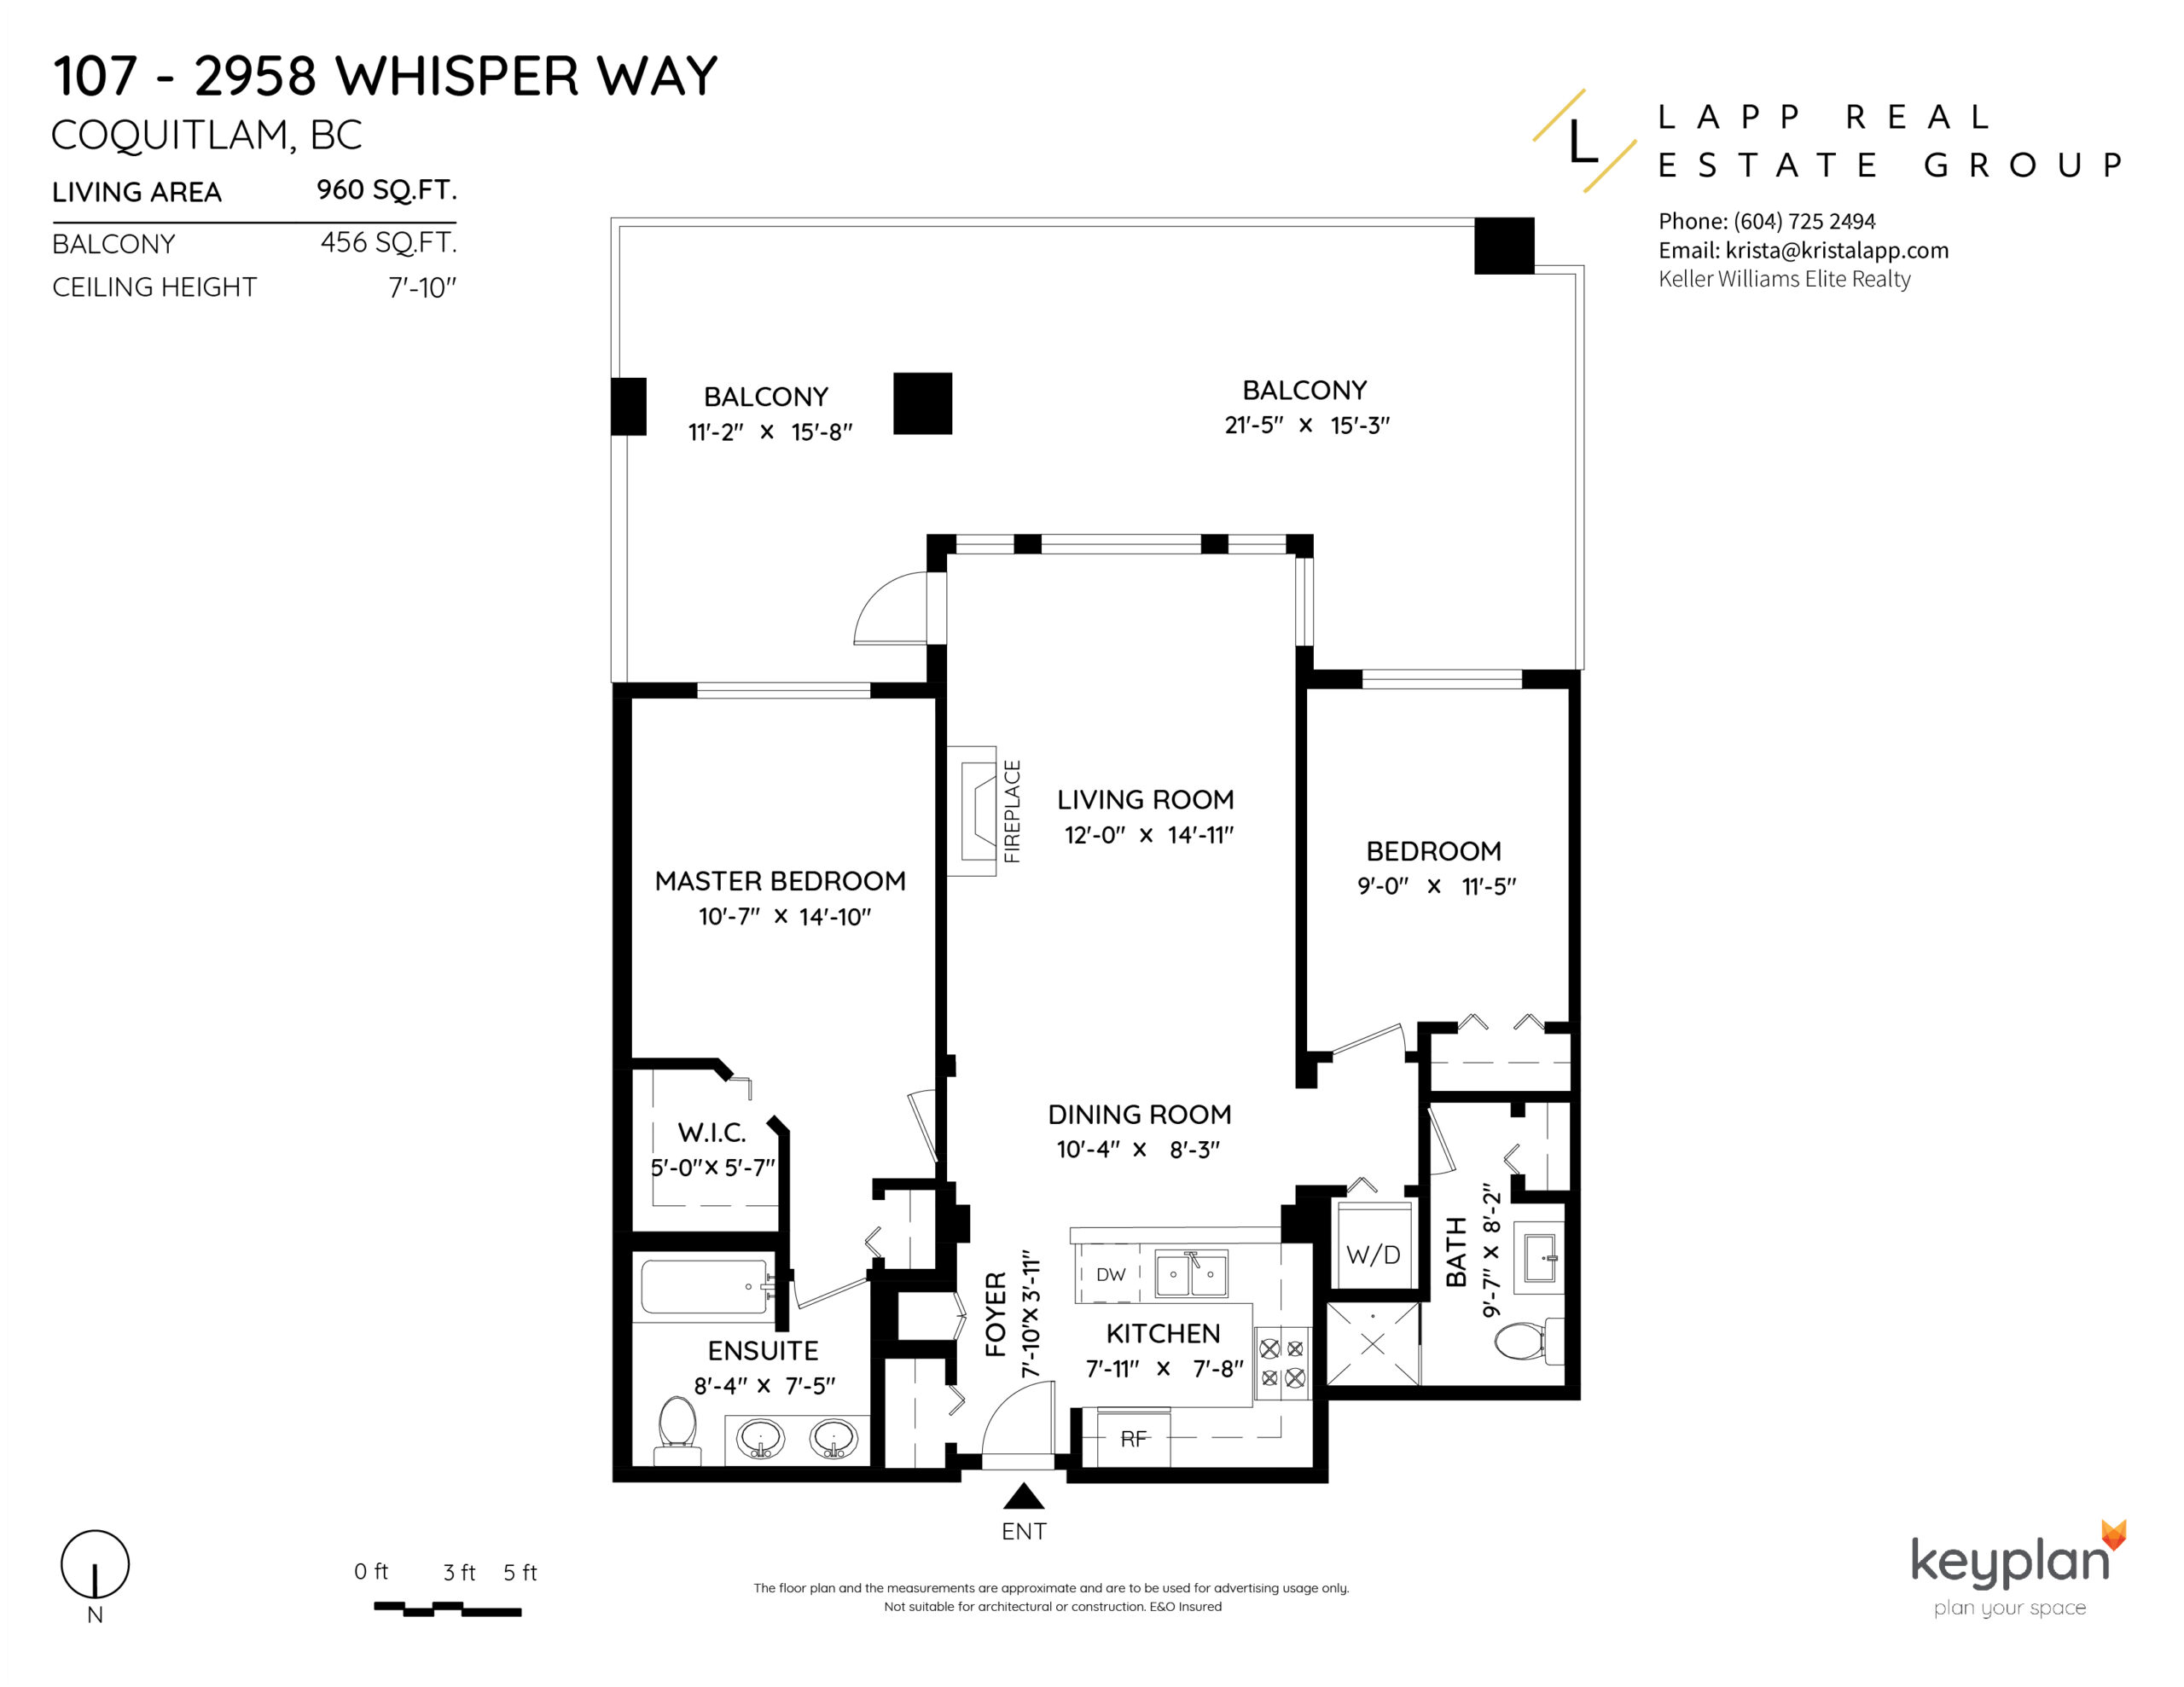 107 2958 Whisper Way Floor Plan, Coquitlam